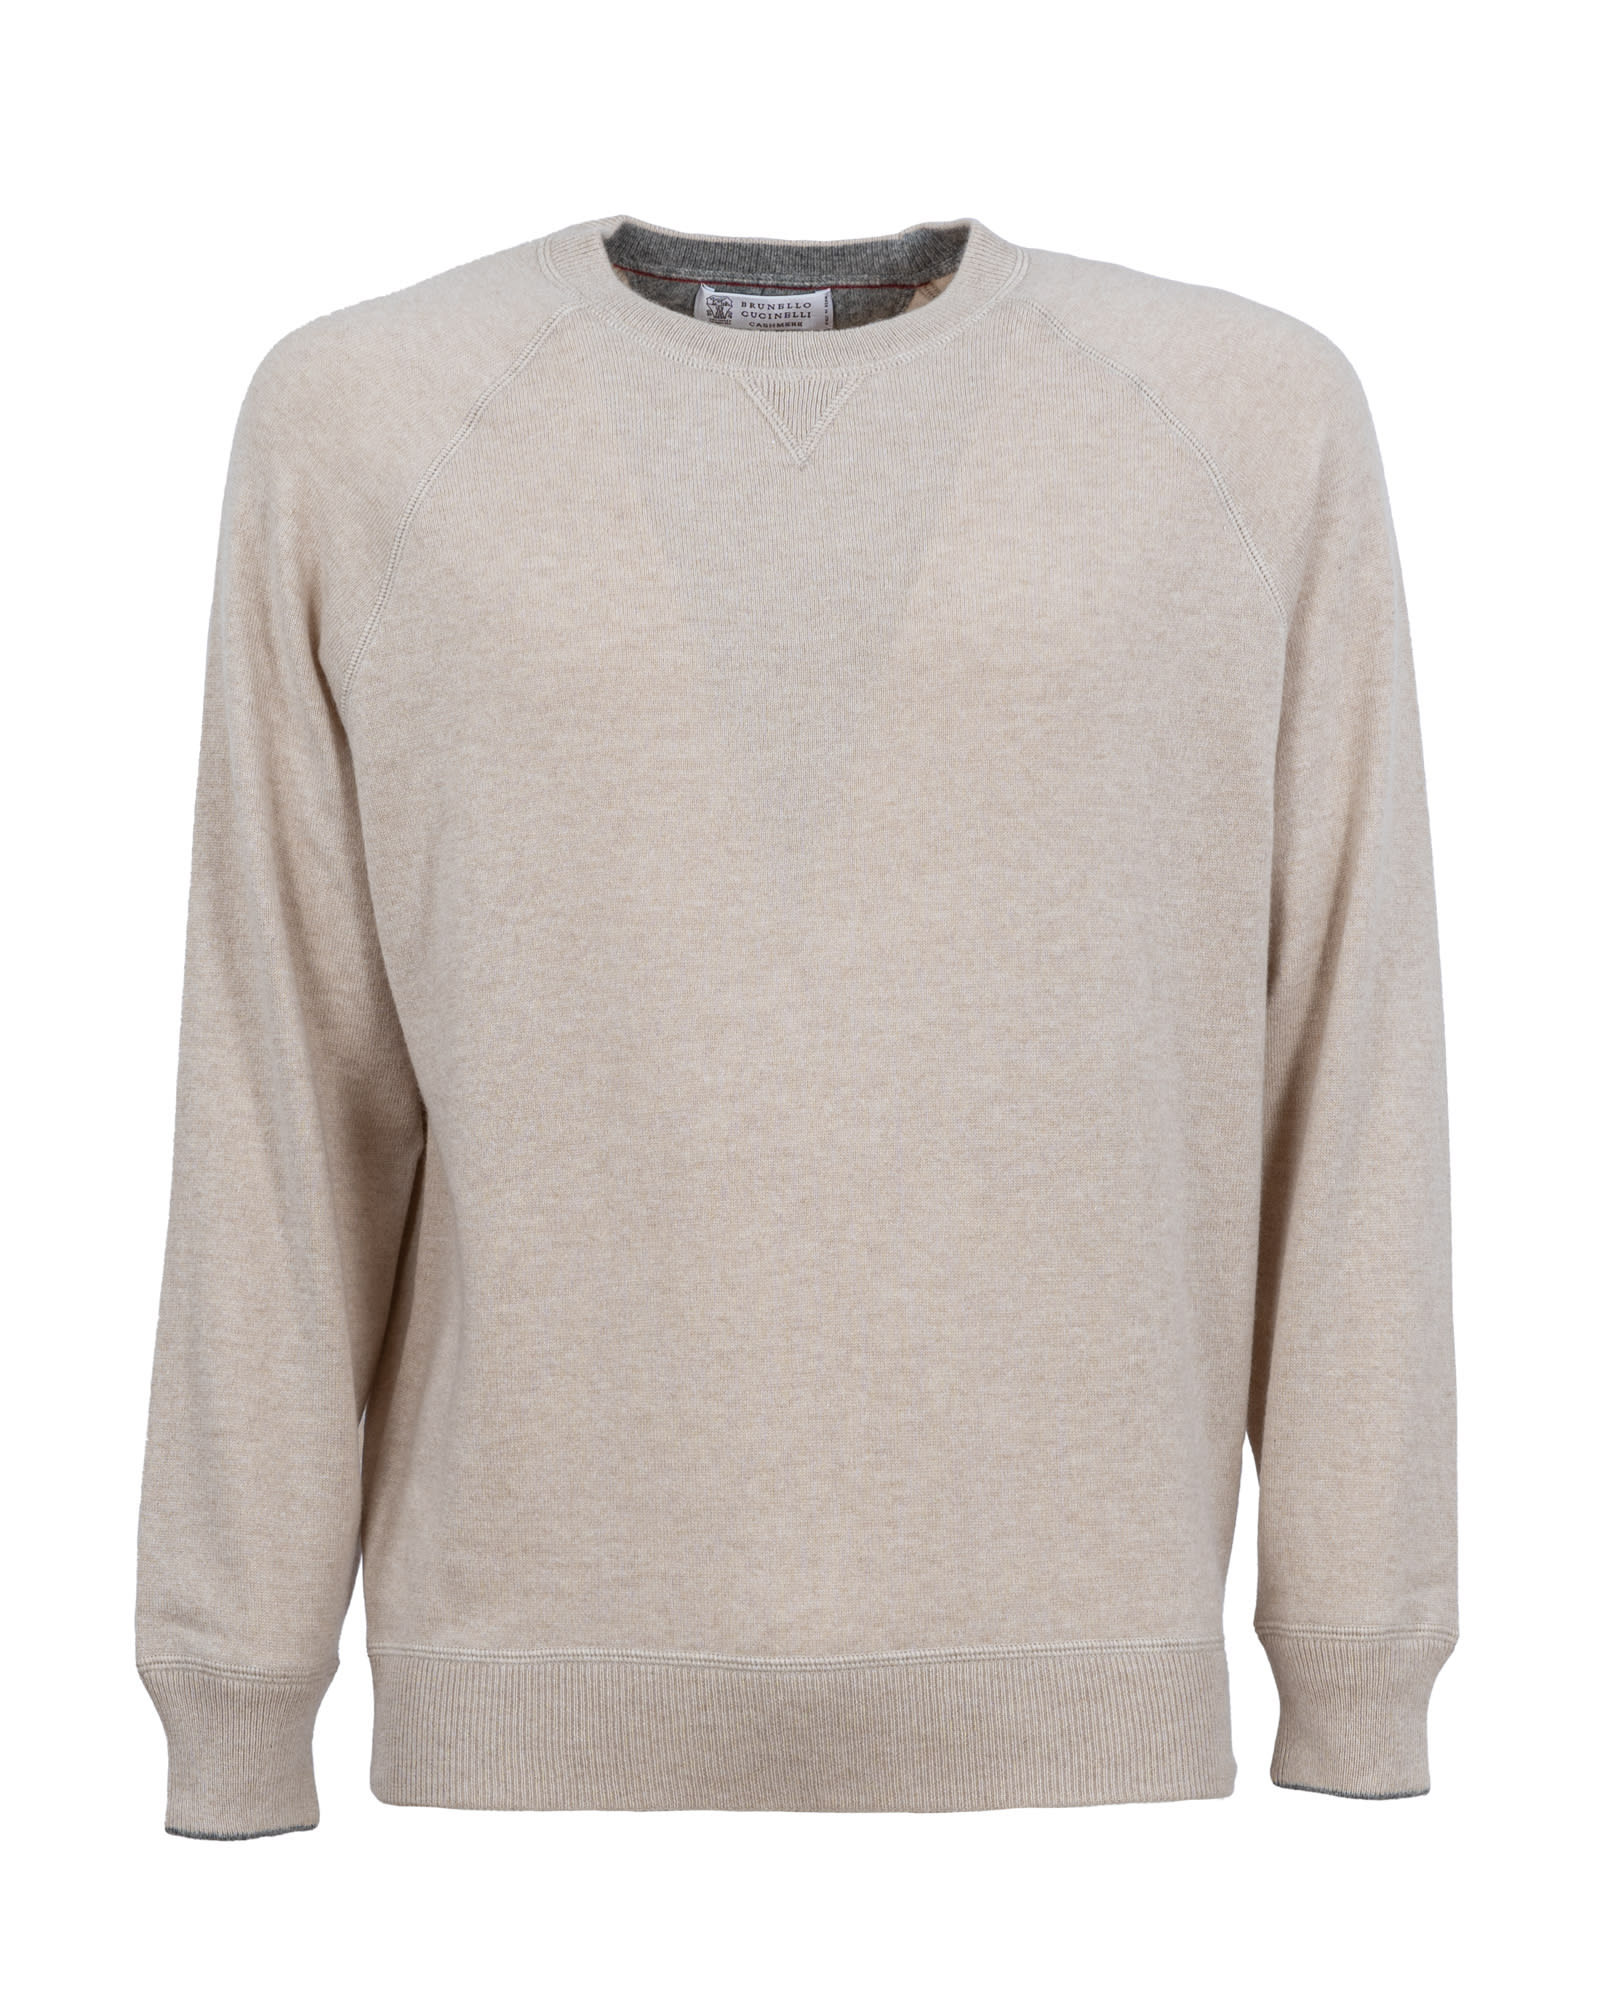 Brunello Cucinelli cashmere sweatshirt-style sweater